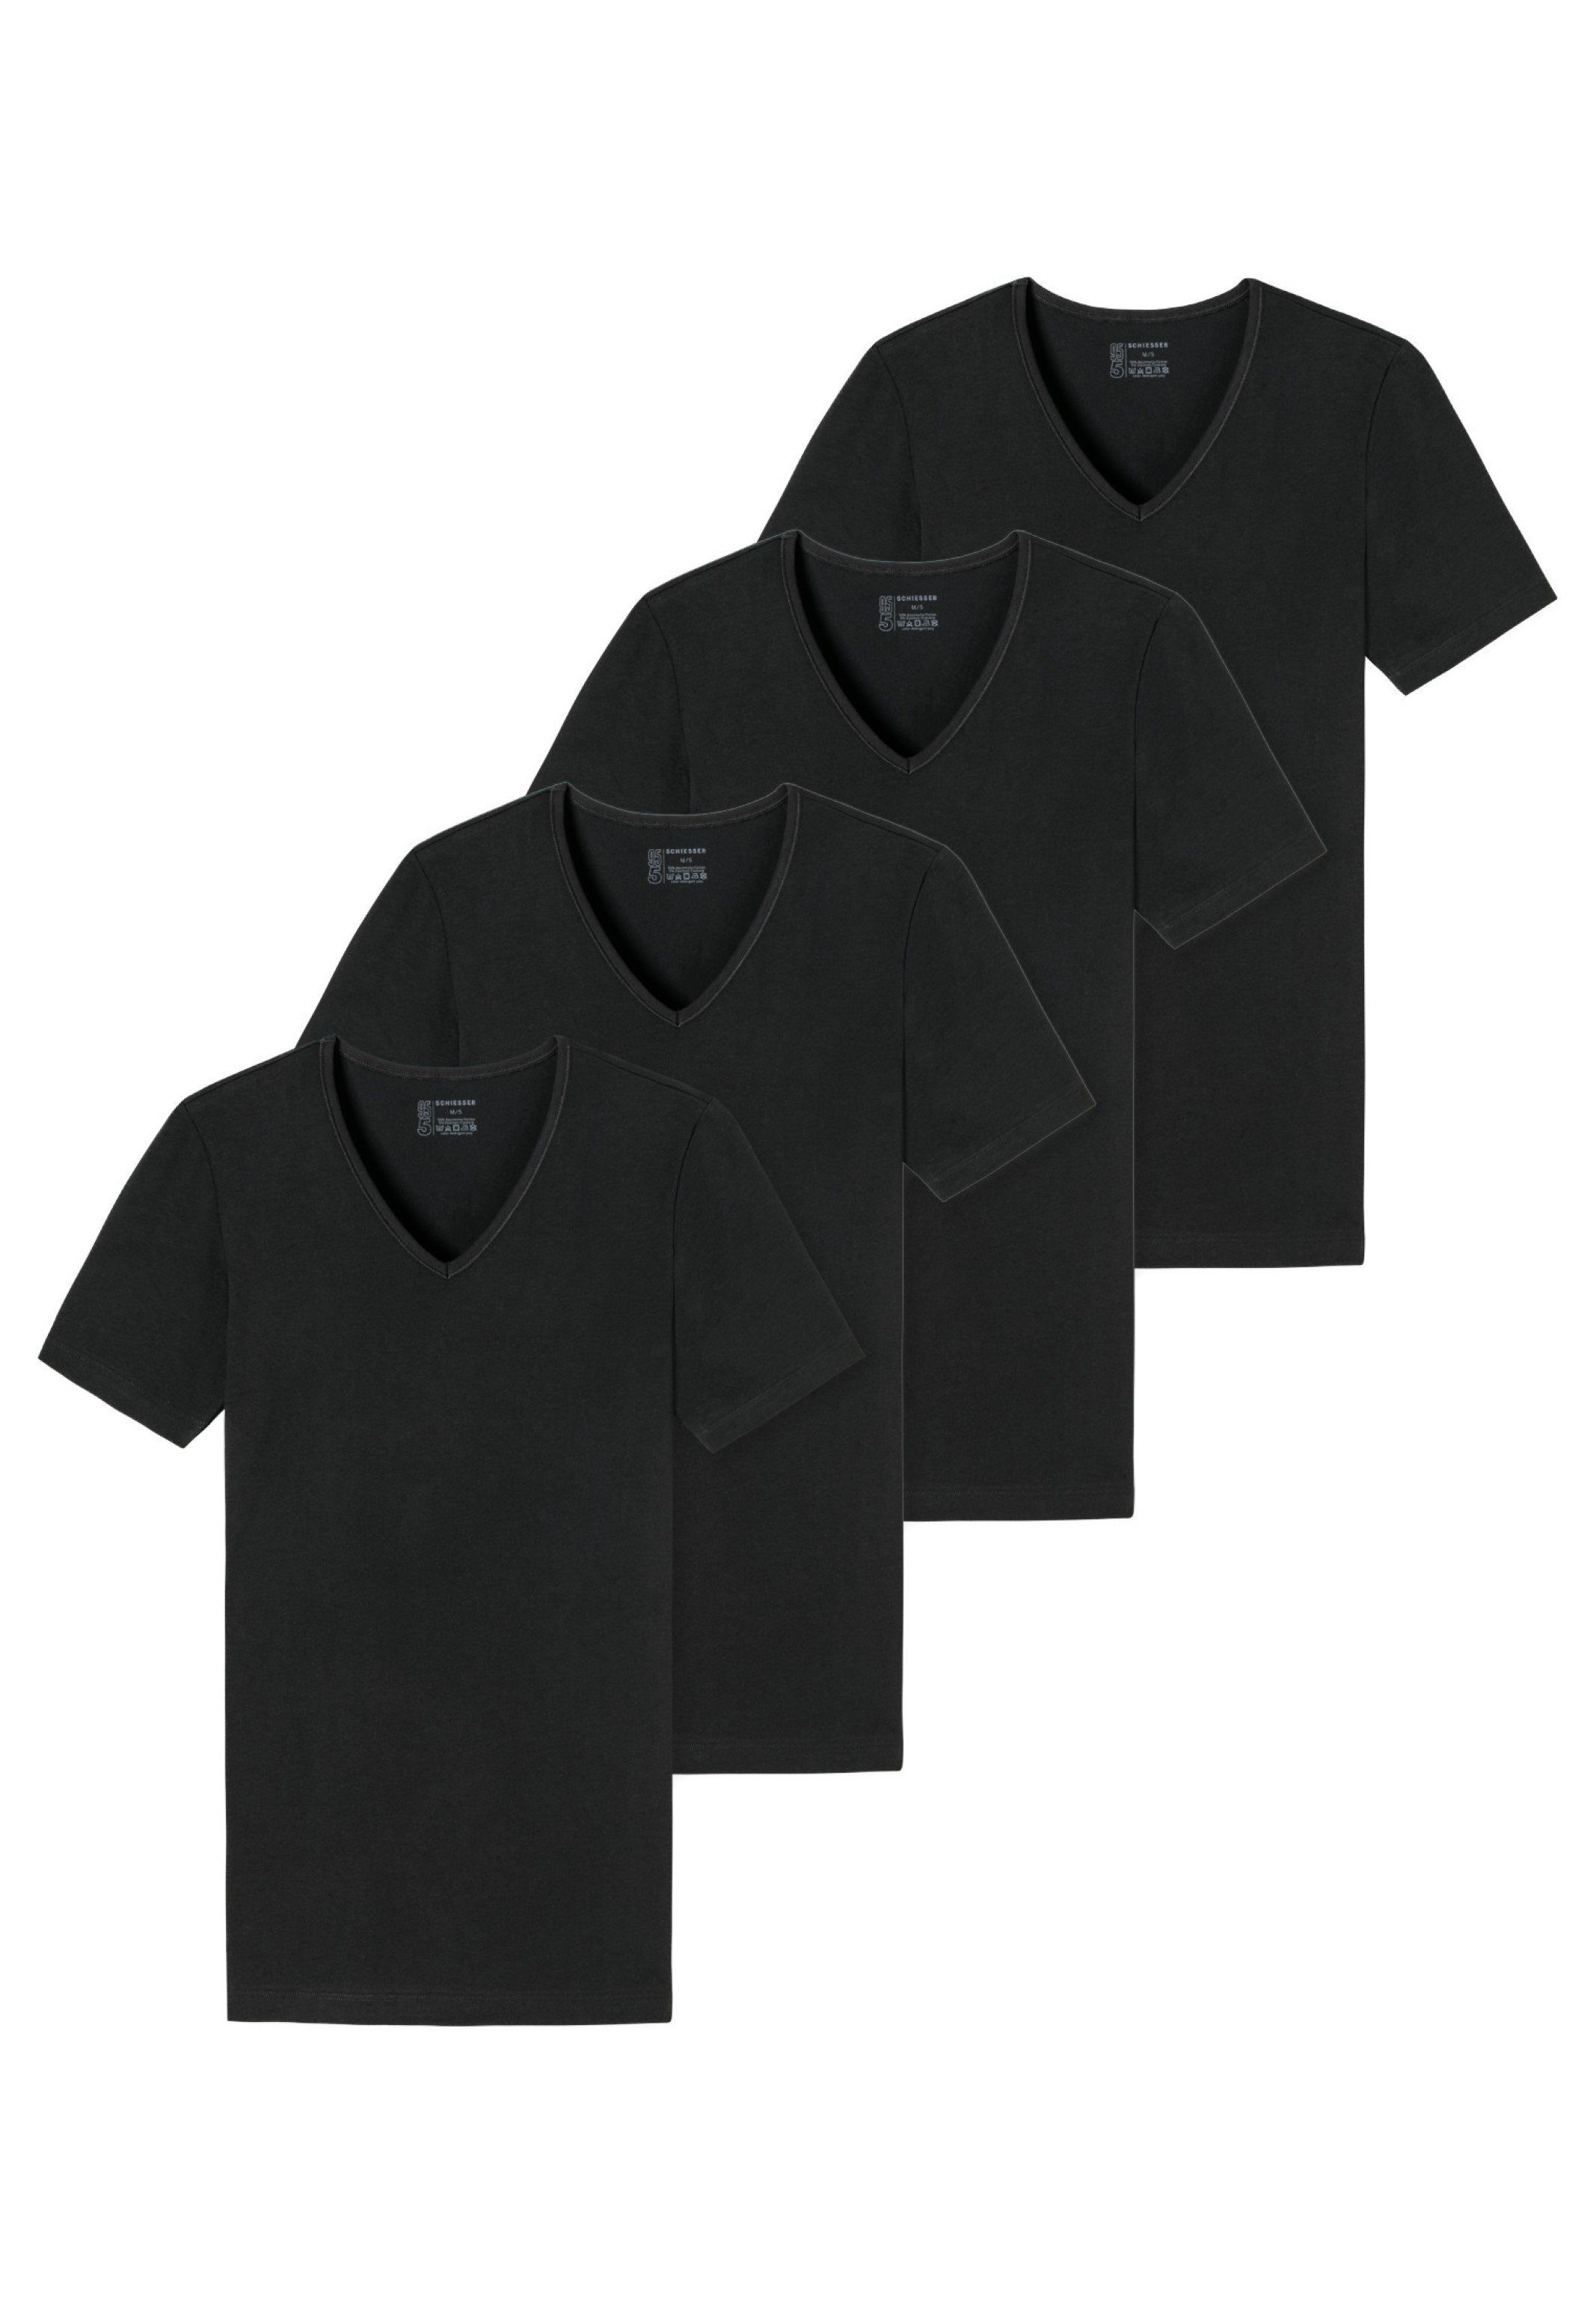 Wäsche/Bademode Unterhemden Schiesser Unterhemd 4er-Pack - 95/5 - Organic Cotton (4 Stück), T-Shirt / Unterhemd mit Rundhals - B